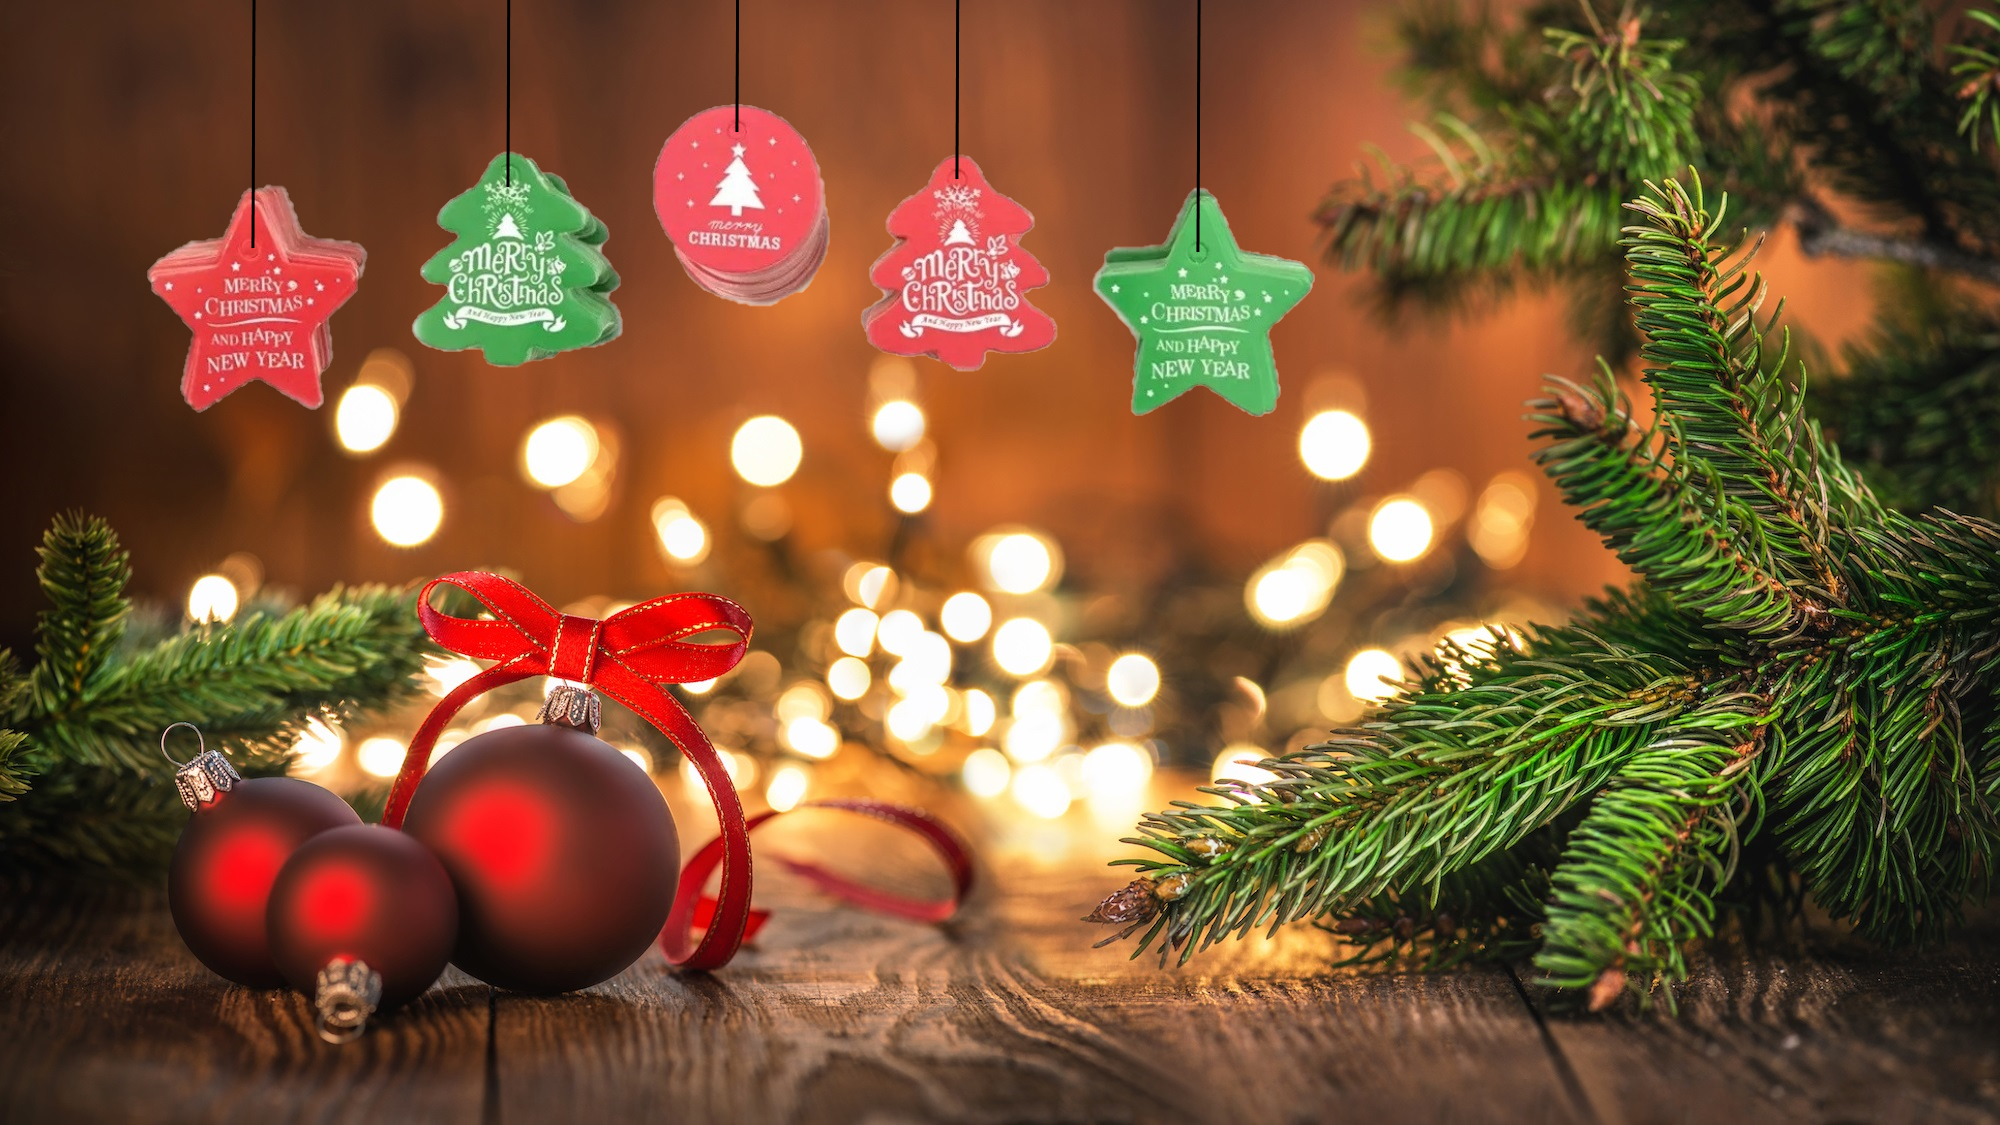 COMBO 5 Thẻ Giáng Sinh - Phụ kiện treo lủng lằng hình cây thông Giáng sinh. Phụ kiện làm Thẻ quà mang Thông điệp Giáng sinh. Quà tặng khách hàng Thân Yêu